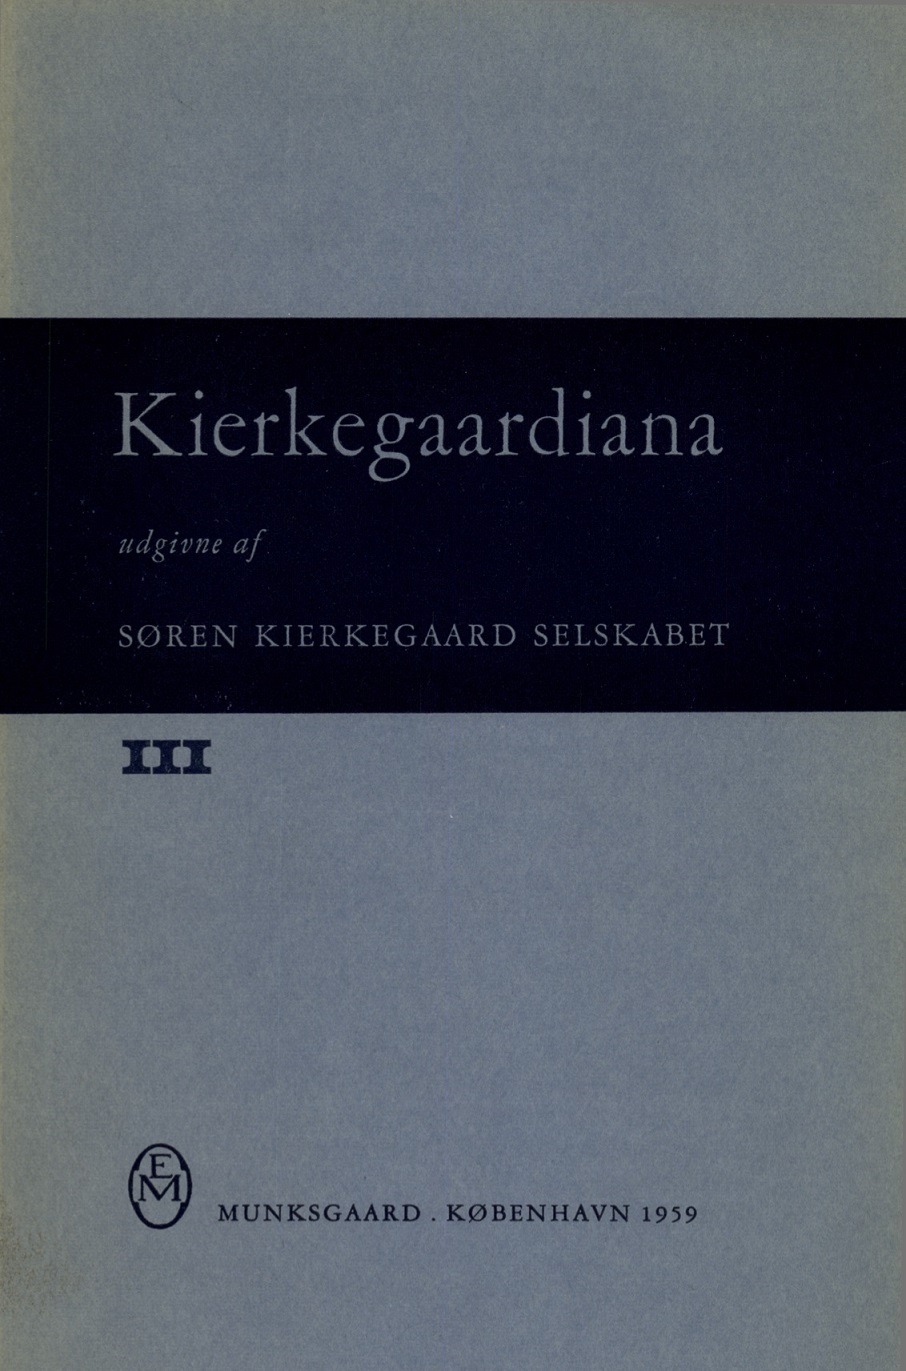 					Se Årg. 3 (1959)
				